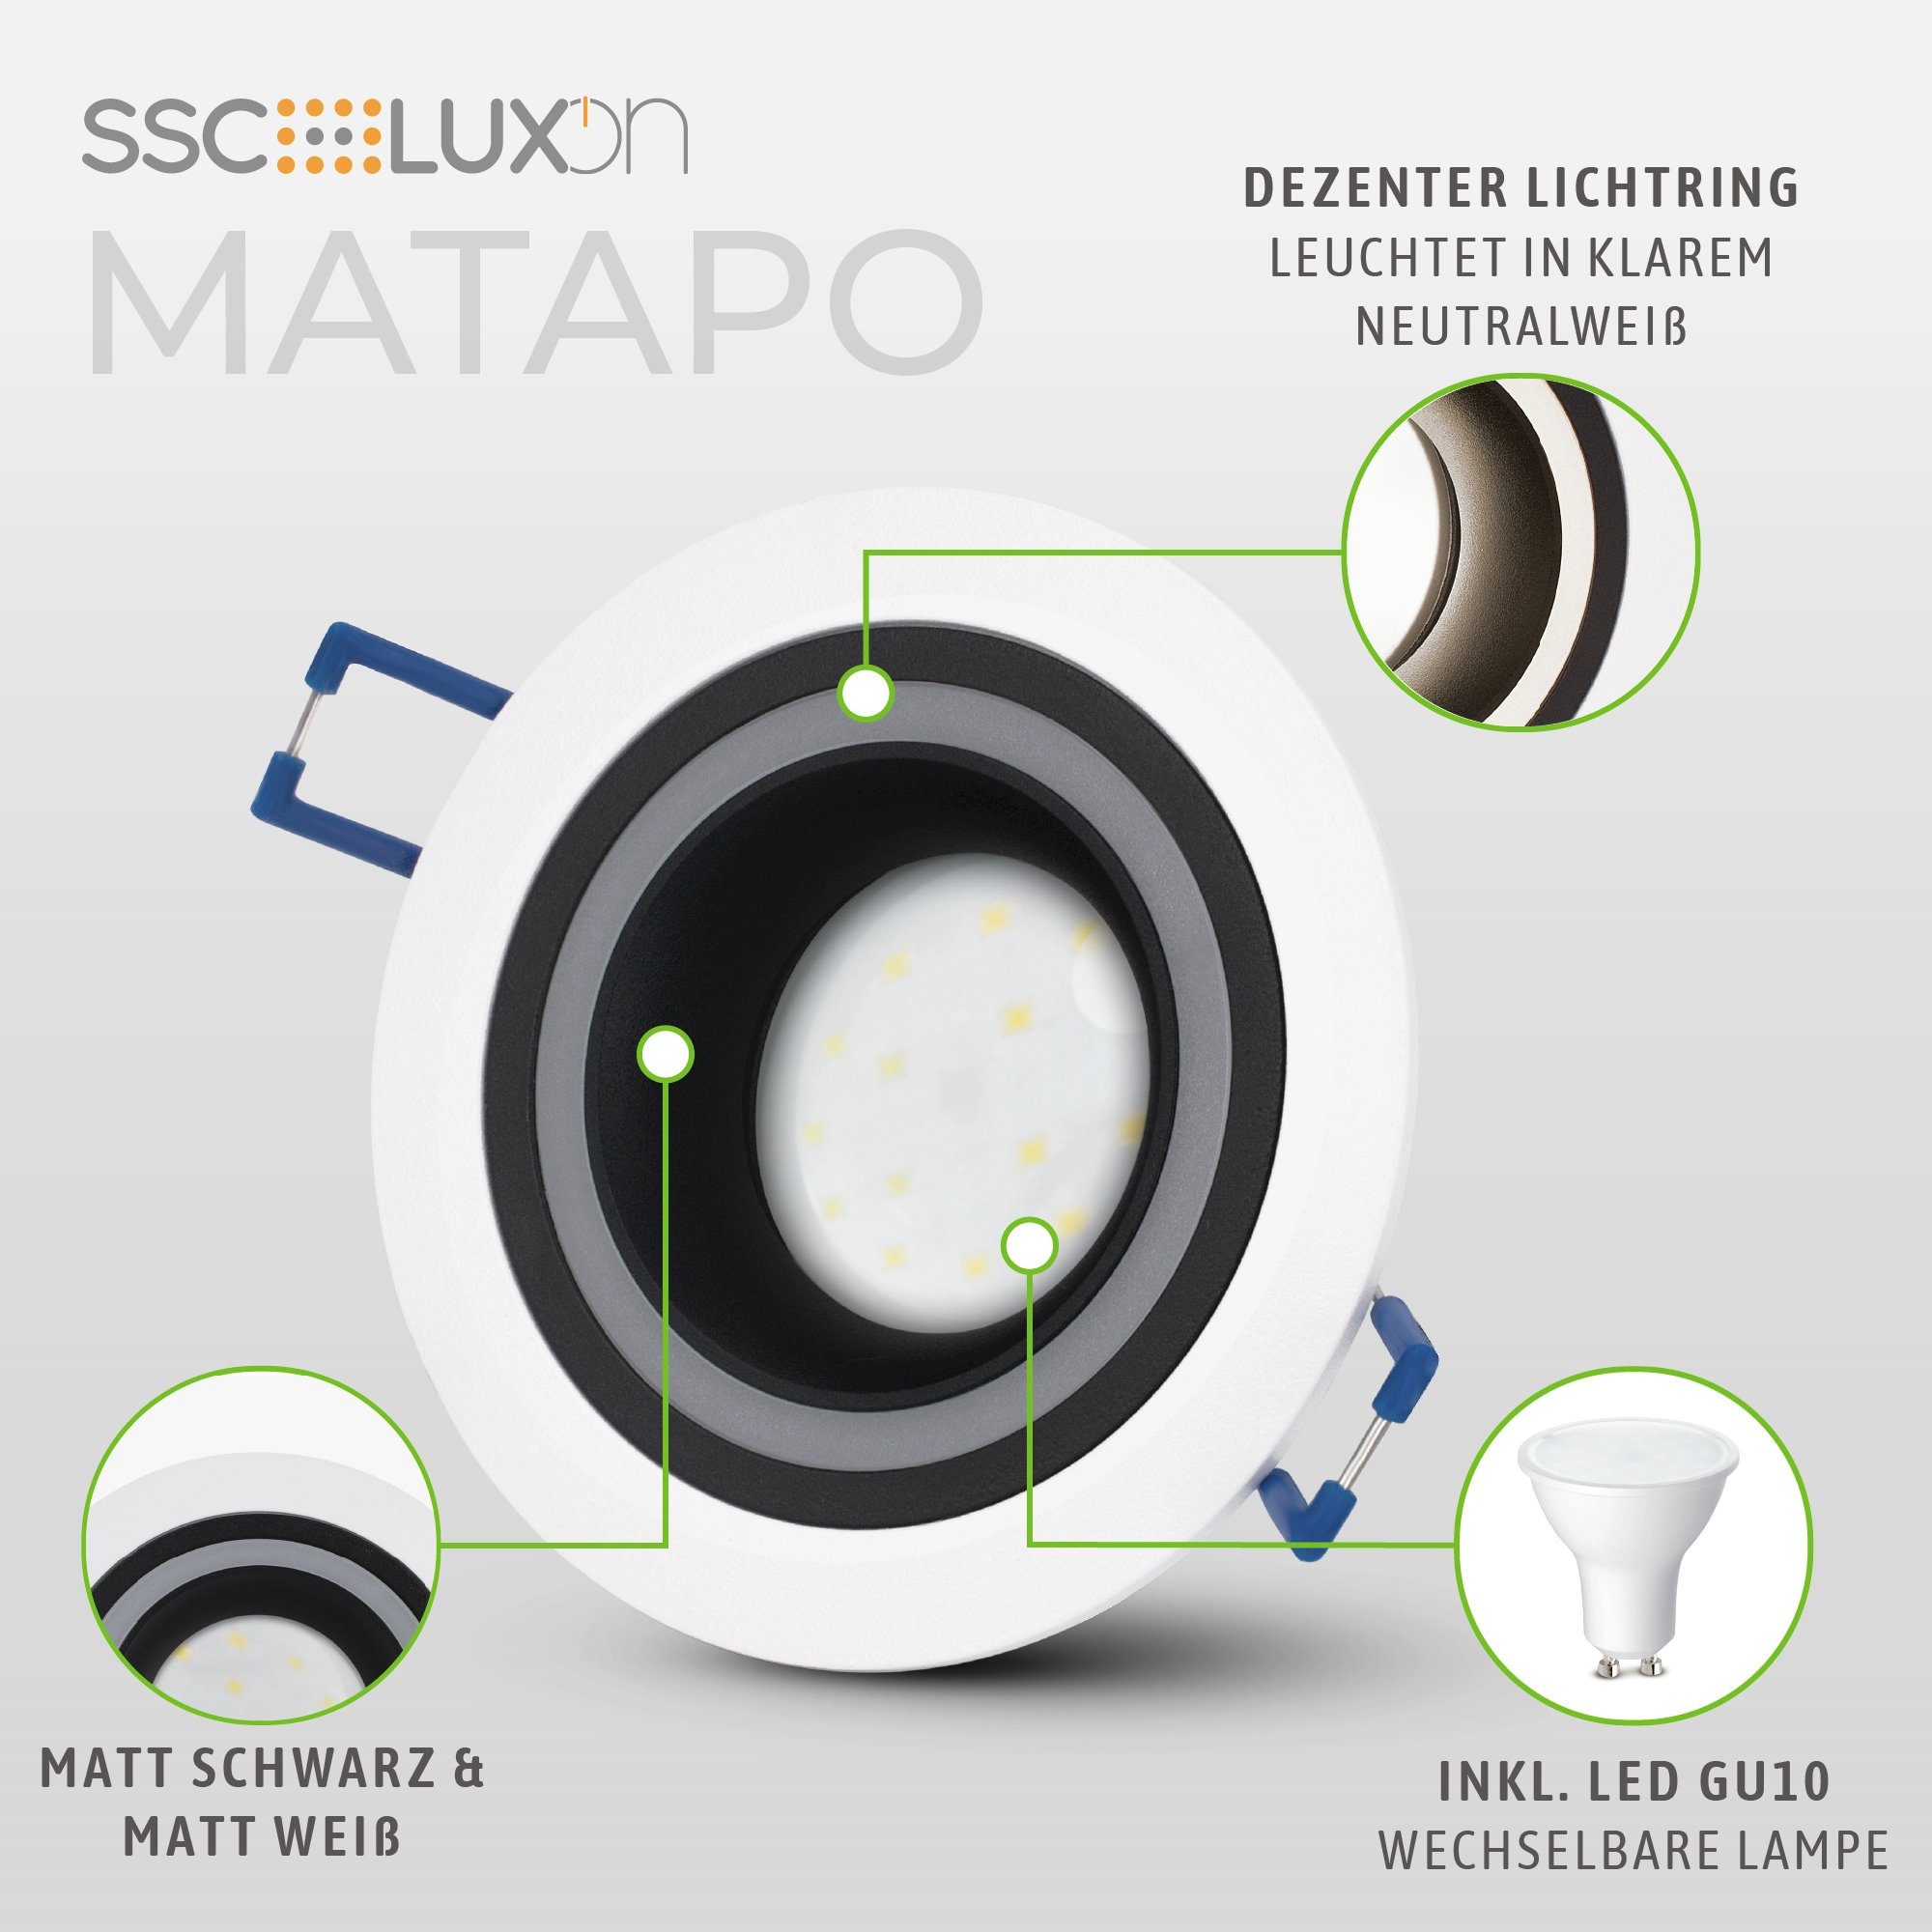 SSC-LUXon LED Einbaustrahler 5W, schwarz GU10 Design Neutralweiß LED Matapo mit Leuchtmittel Einbauspot weiss